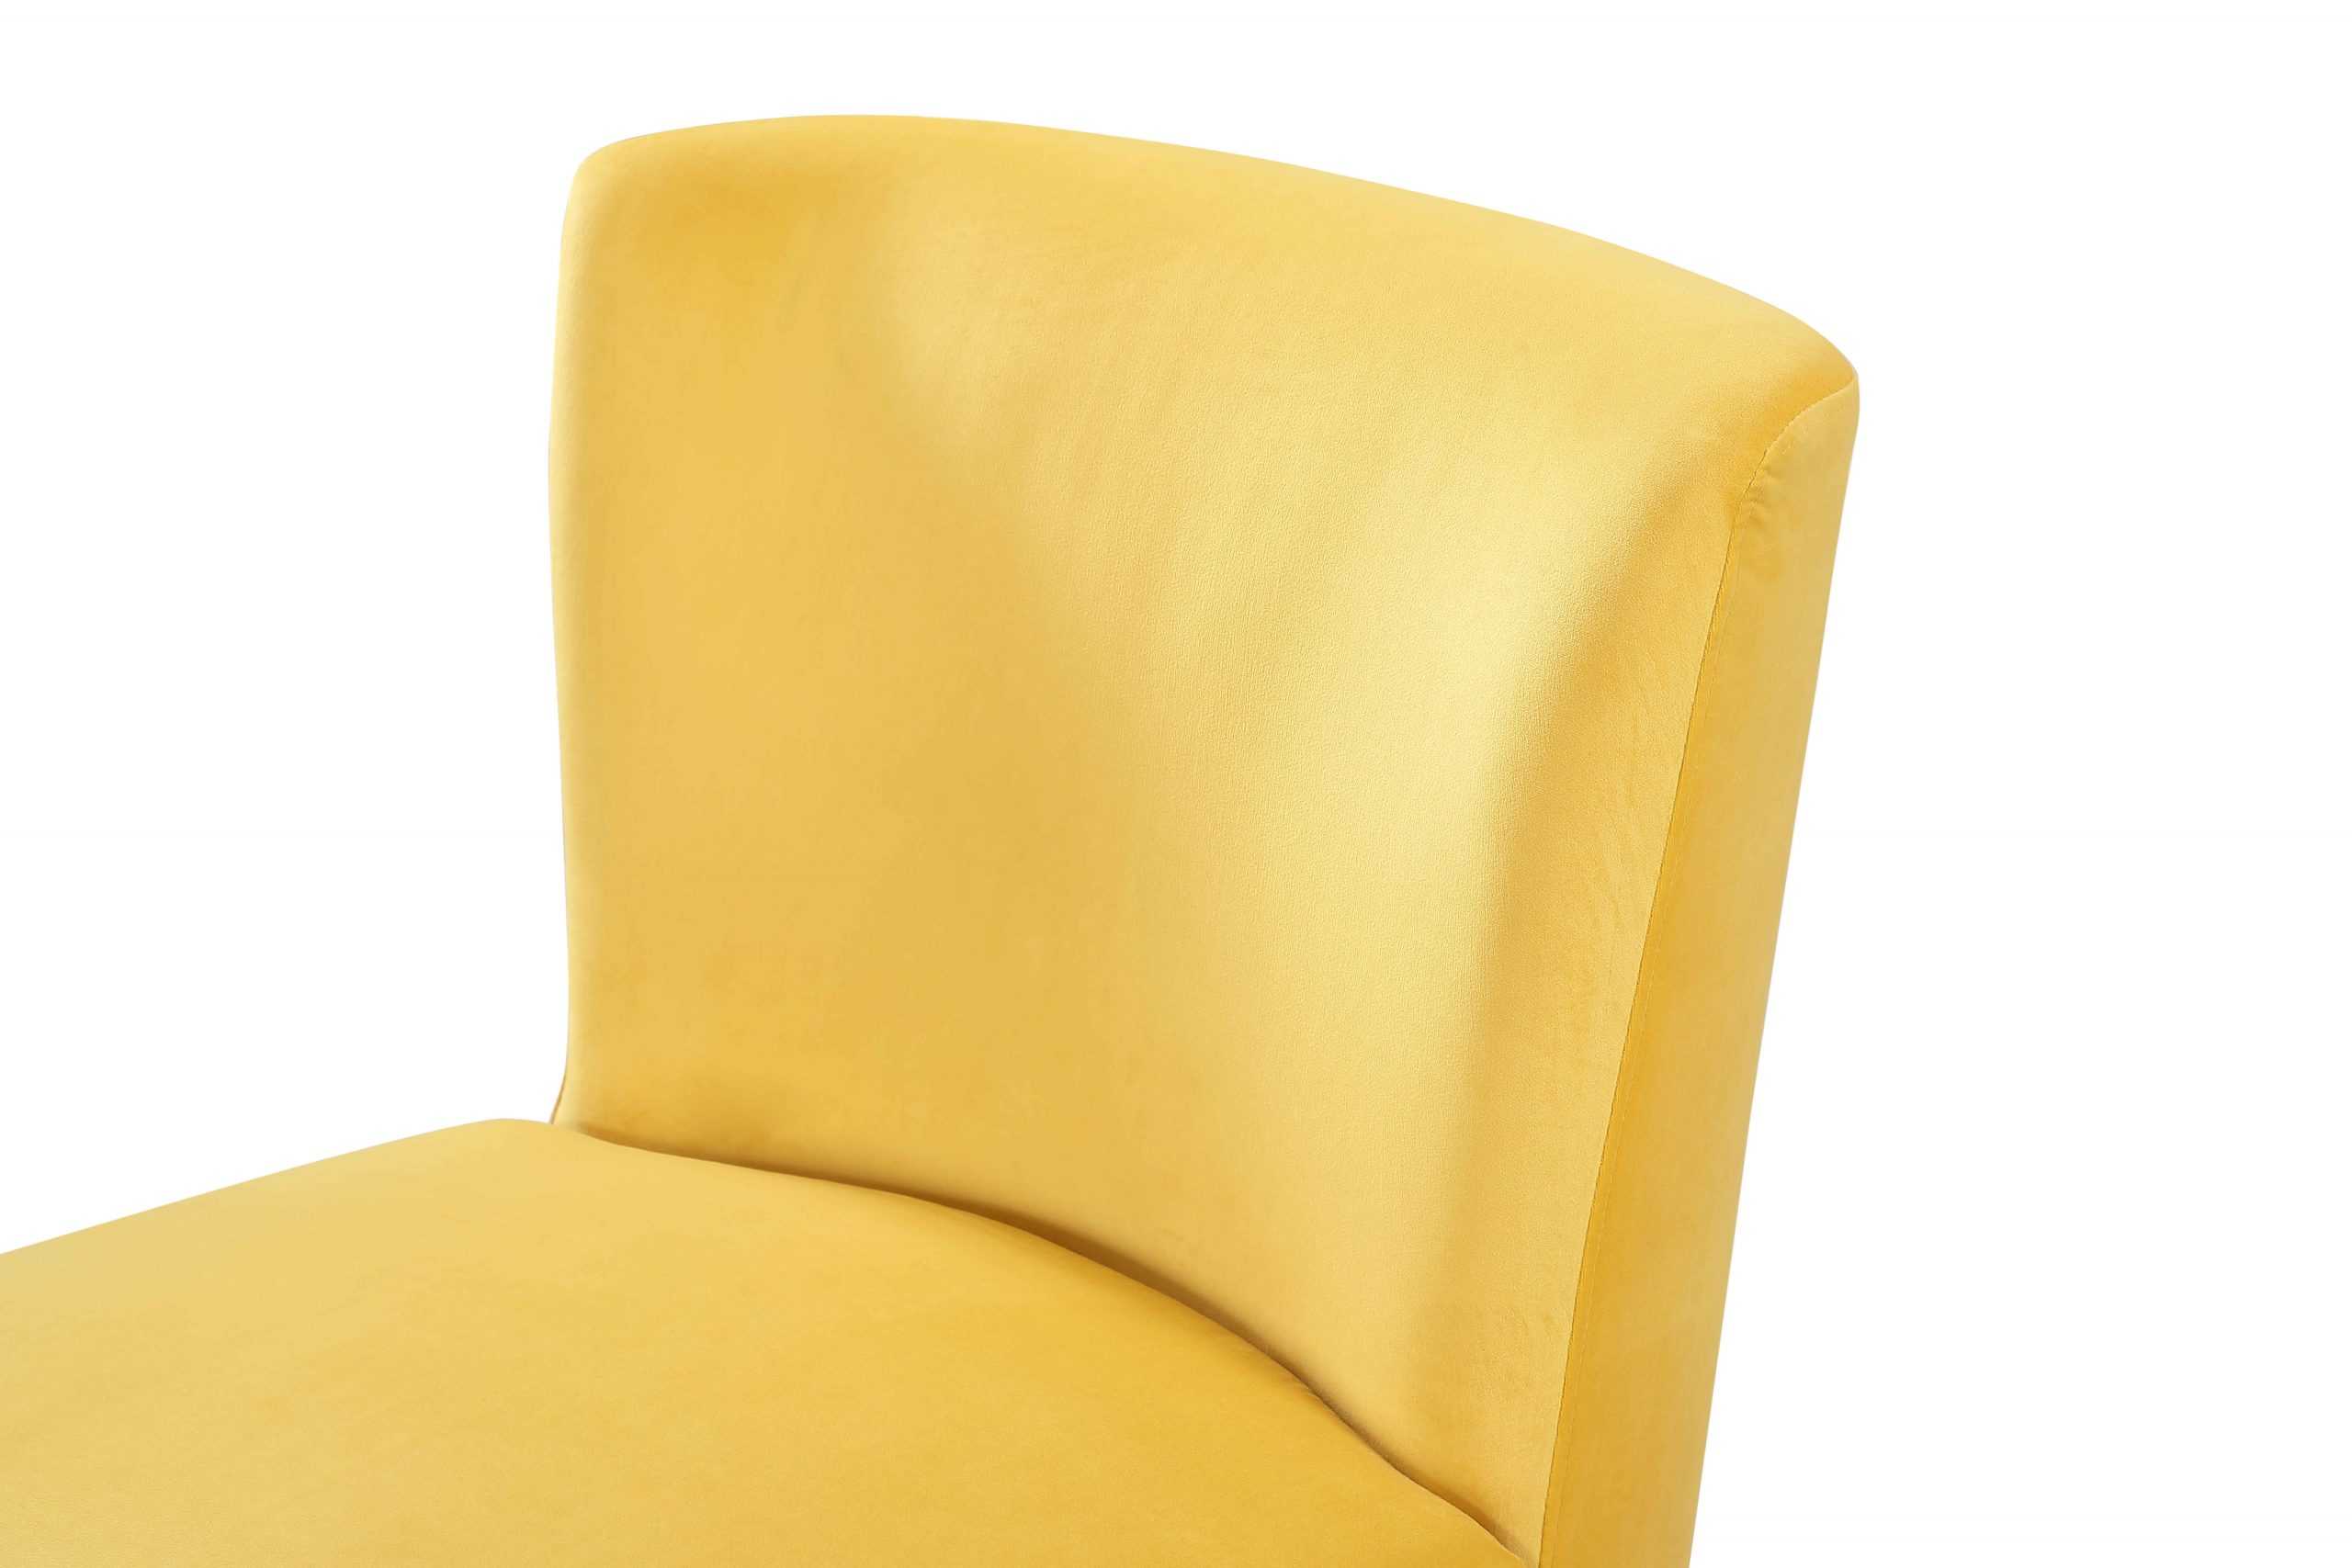 BT Everley Velvet Upholstered Accent Chair